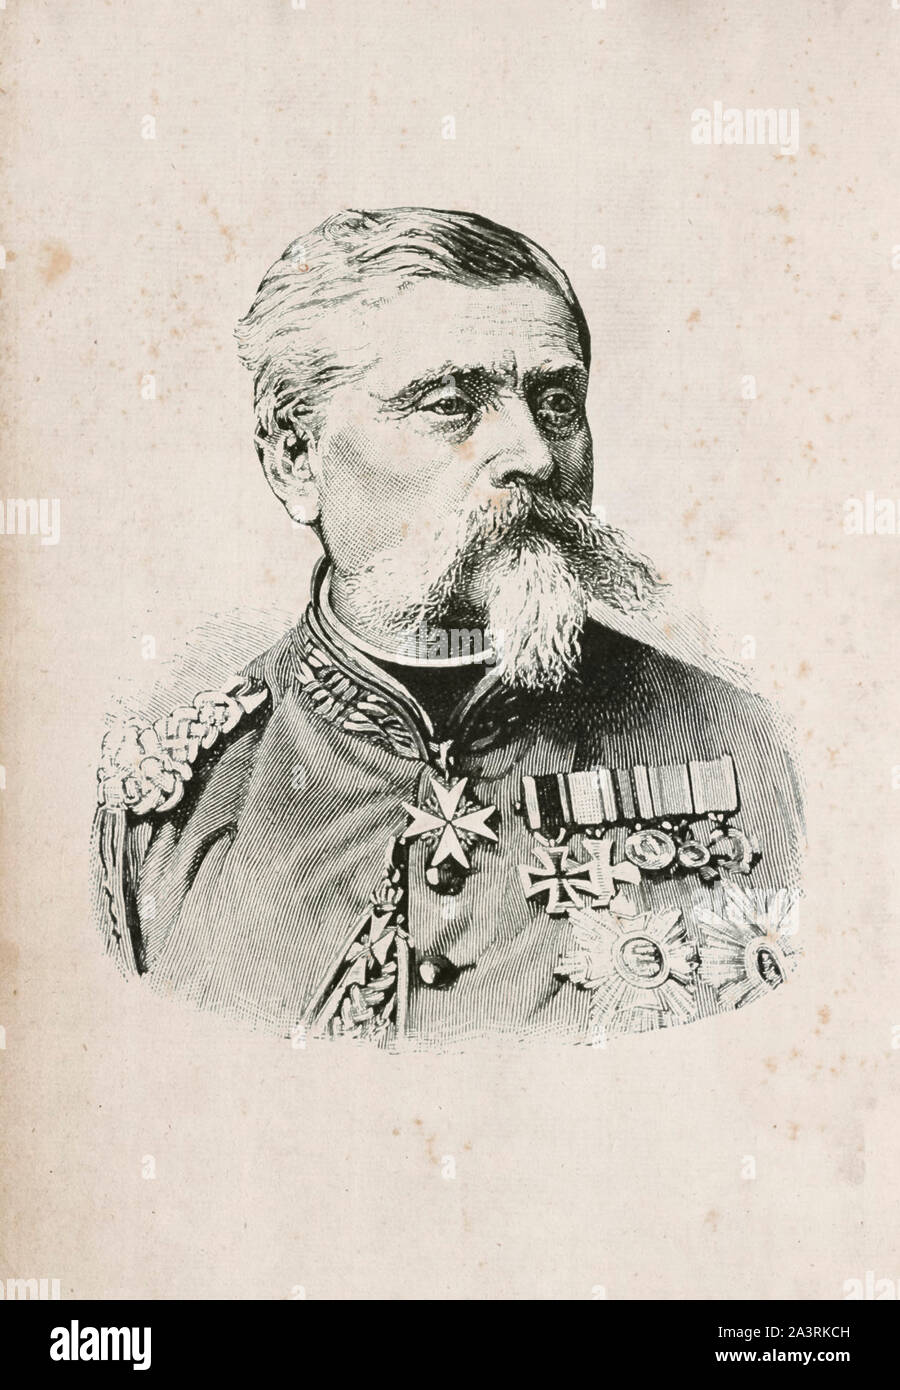 Ludwig Heinrich Sansón Arthur Freiherr von und zu der Tann-Rathsamhausen (1815 - 1881) fue un general de Baviera. Foto de stock